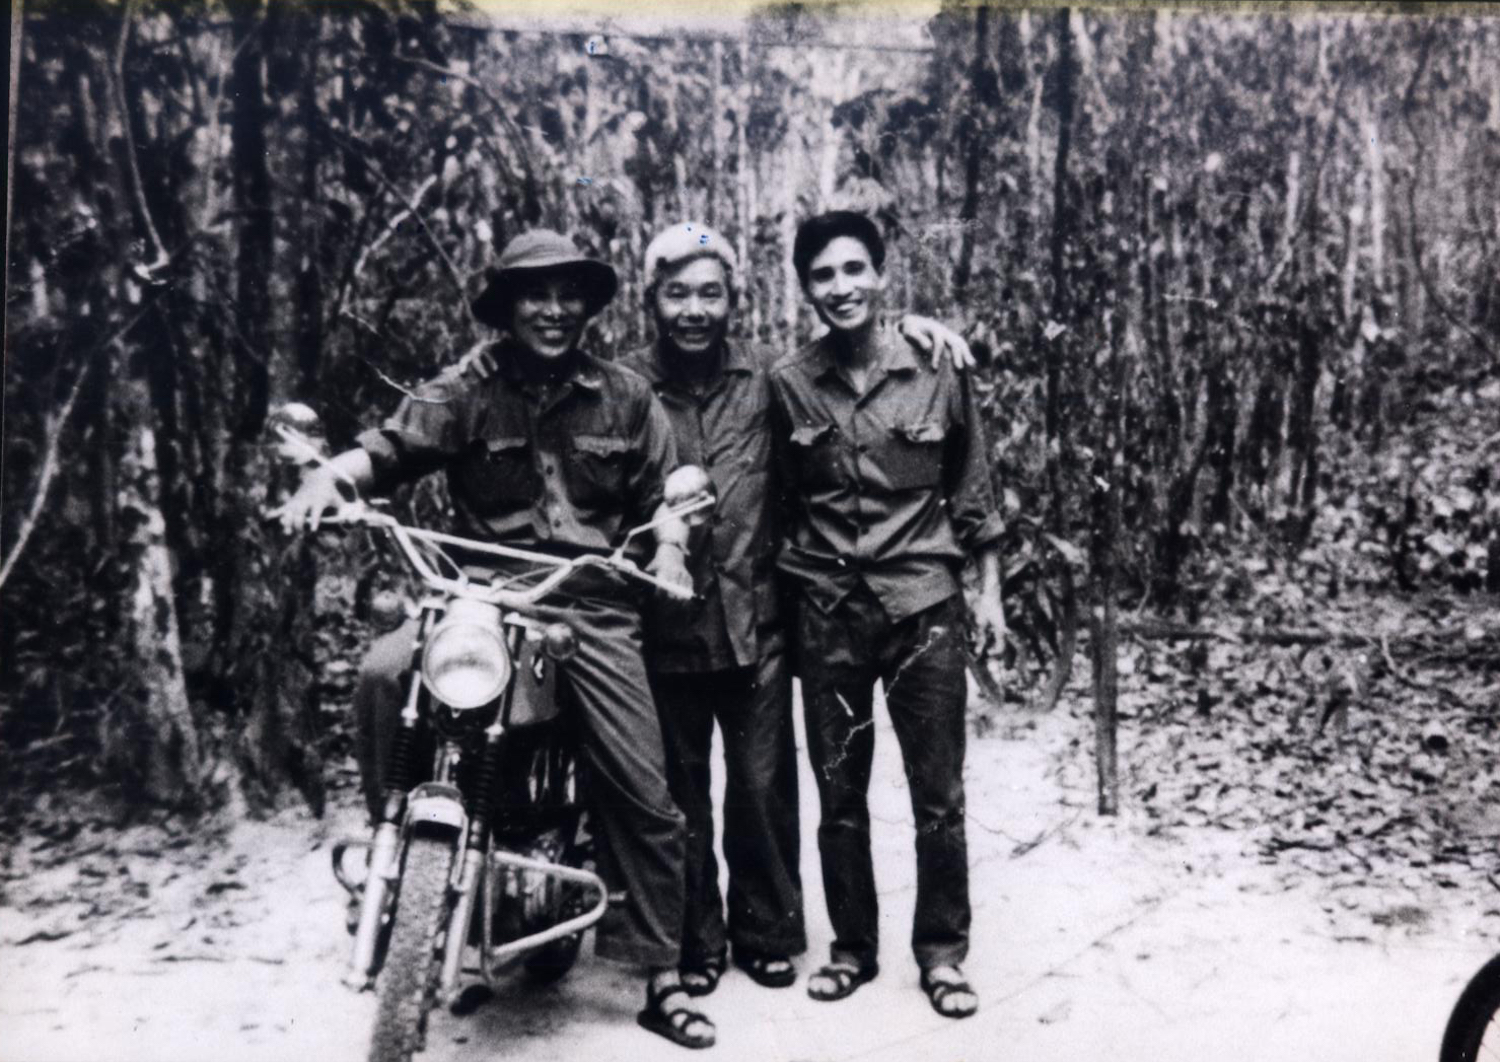 Nhà báo Văn Bảo, nhà báo Đào Tùng và nhà báo Trần Mai Hạnh (từ trái qua) tại cửa rừng Tây Ninh sáng 29/4/1975. (Ảnh: Nhà báo Trần Mai Hạnh cung cấp)